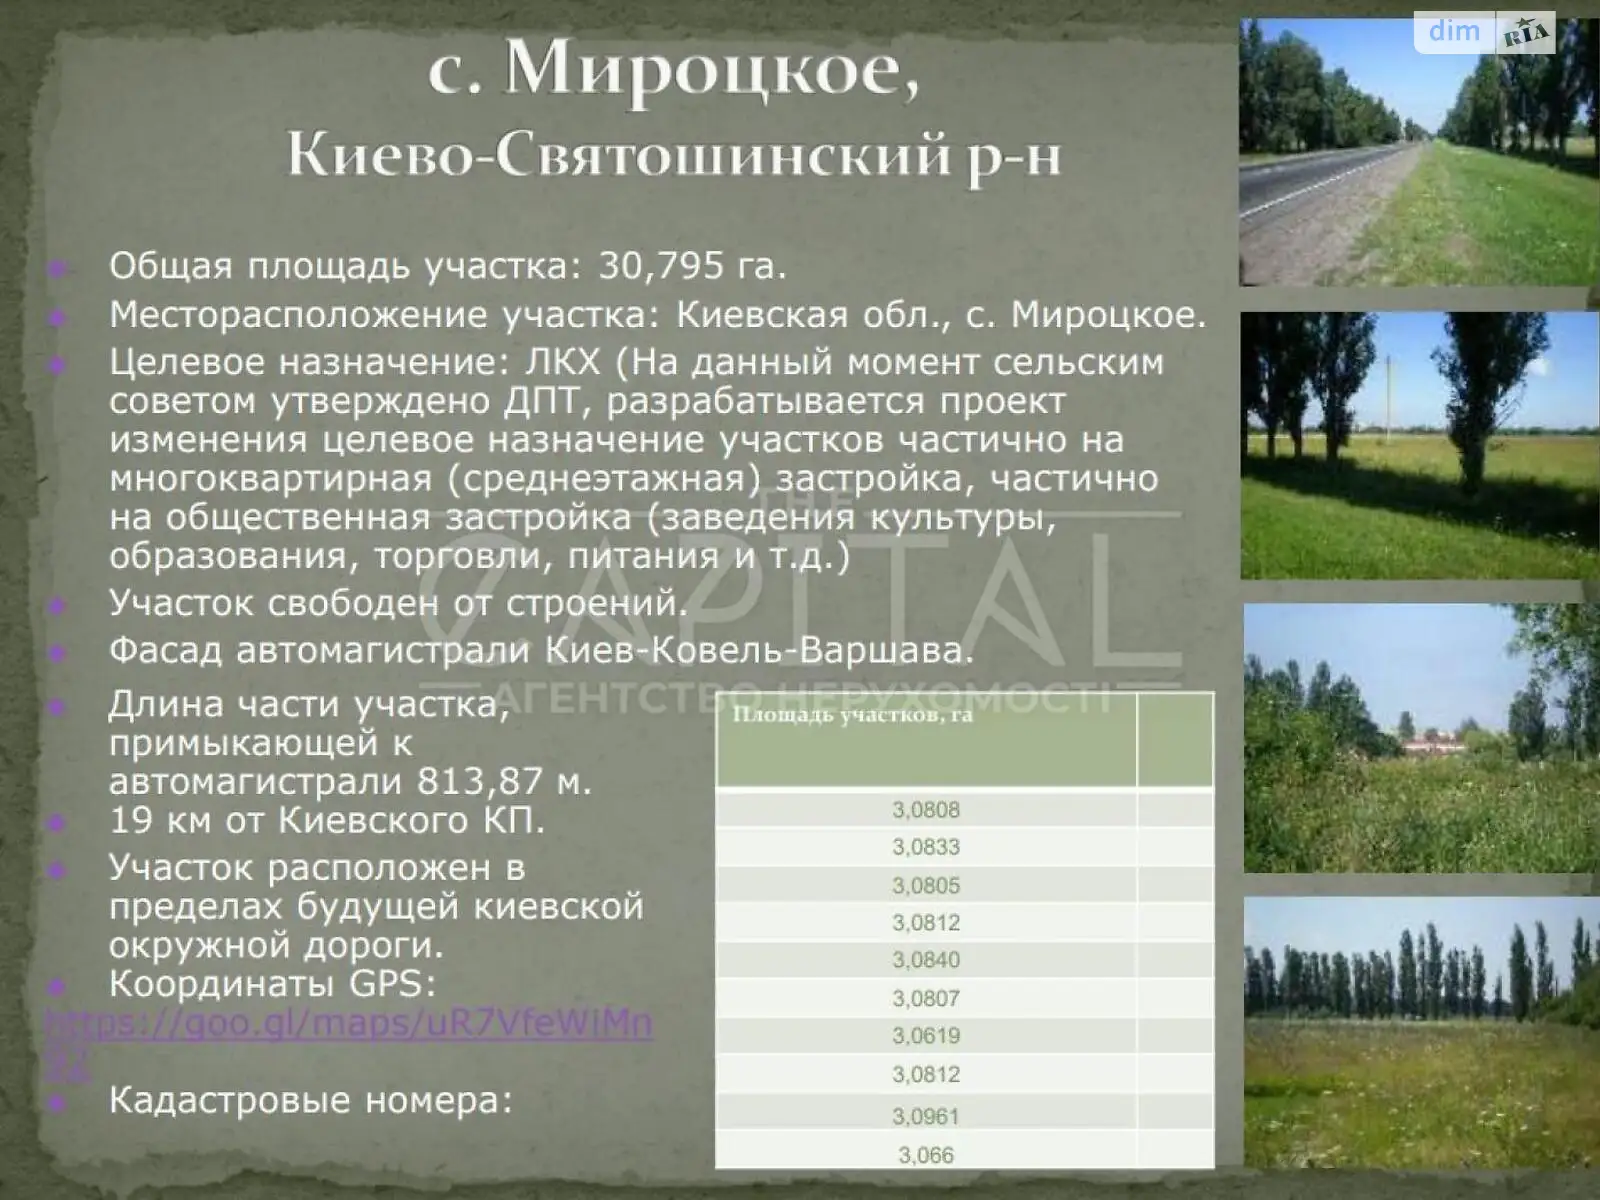 Продается земельный участок 2773 соток в Киевской области, цена: 3882200 $